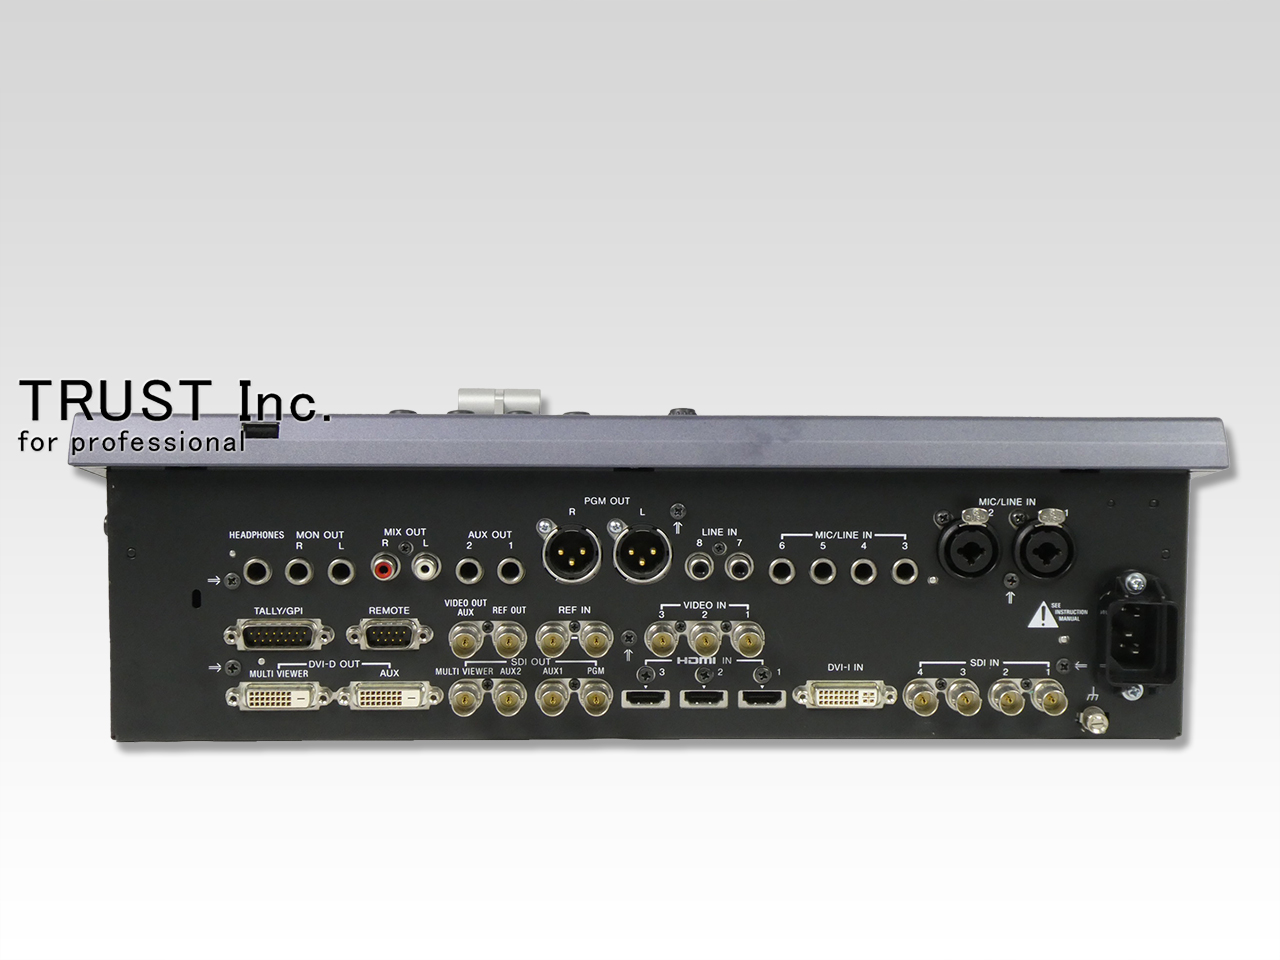 SONY MCS-8M マルチフォーマットコンパクトスイッチャー